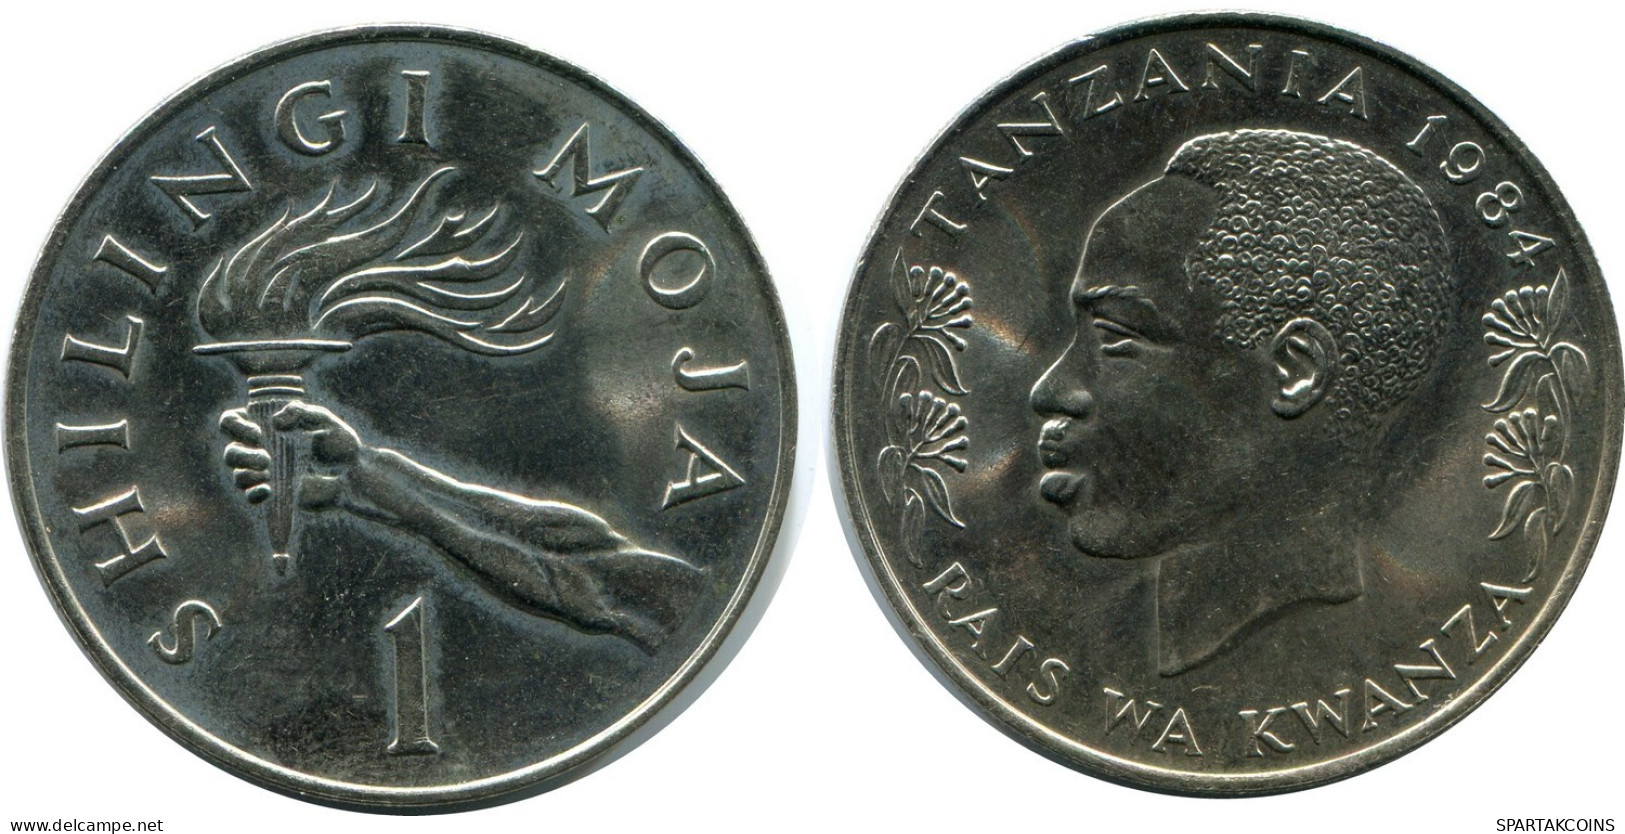 1 SHILINGI 1984 TANZANIA Coin #AZ088.U.A - Tansania